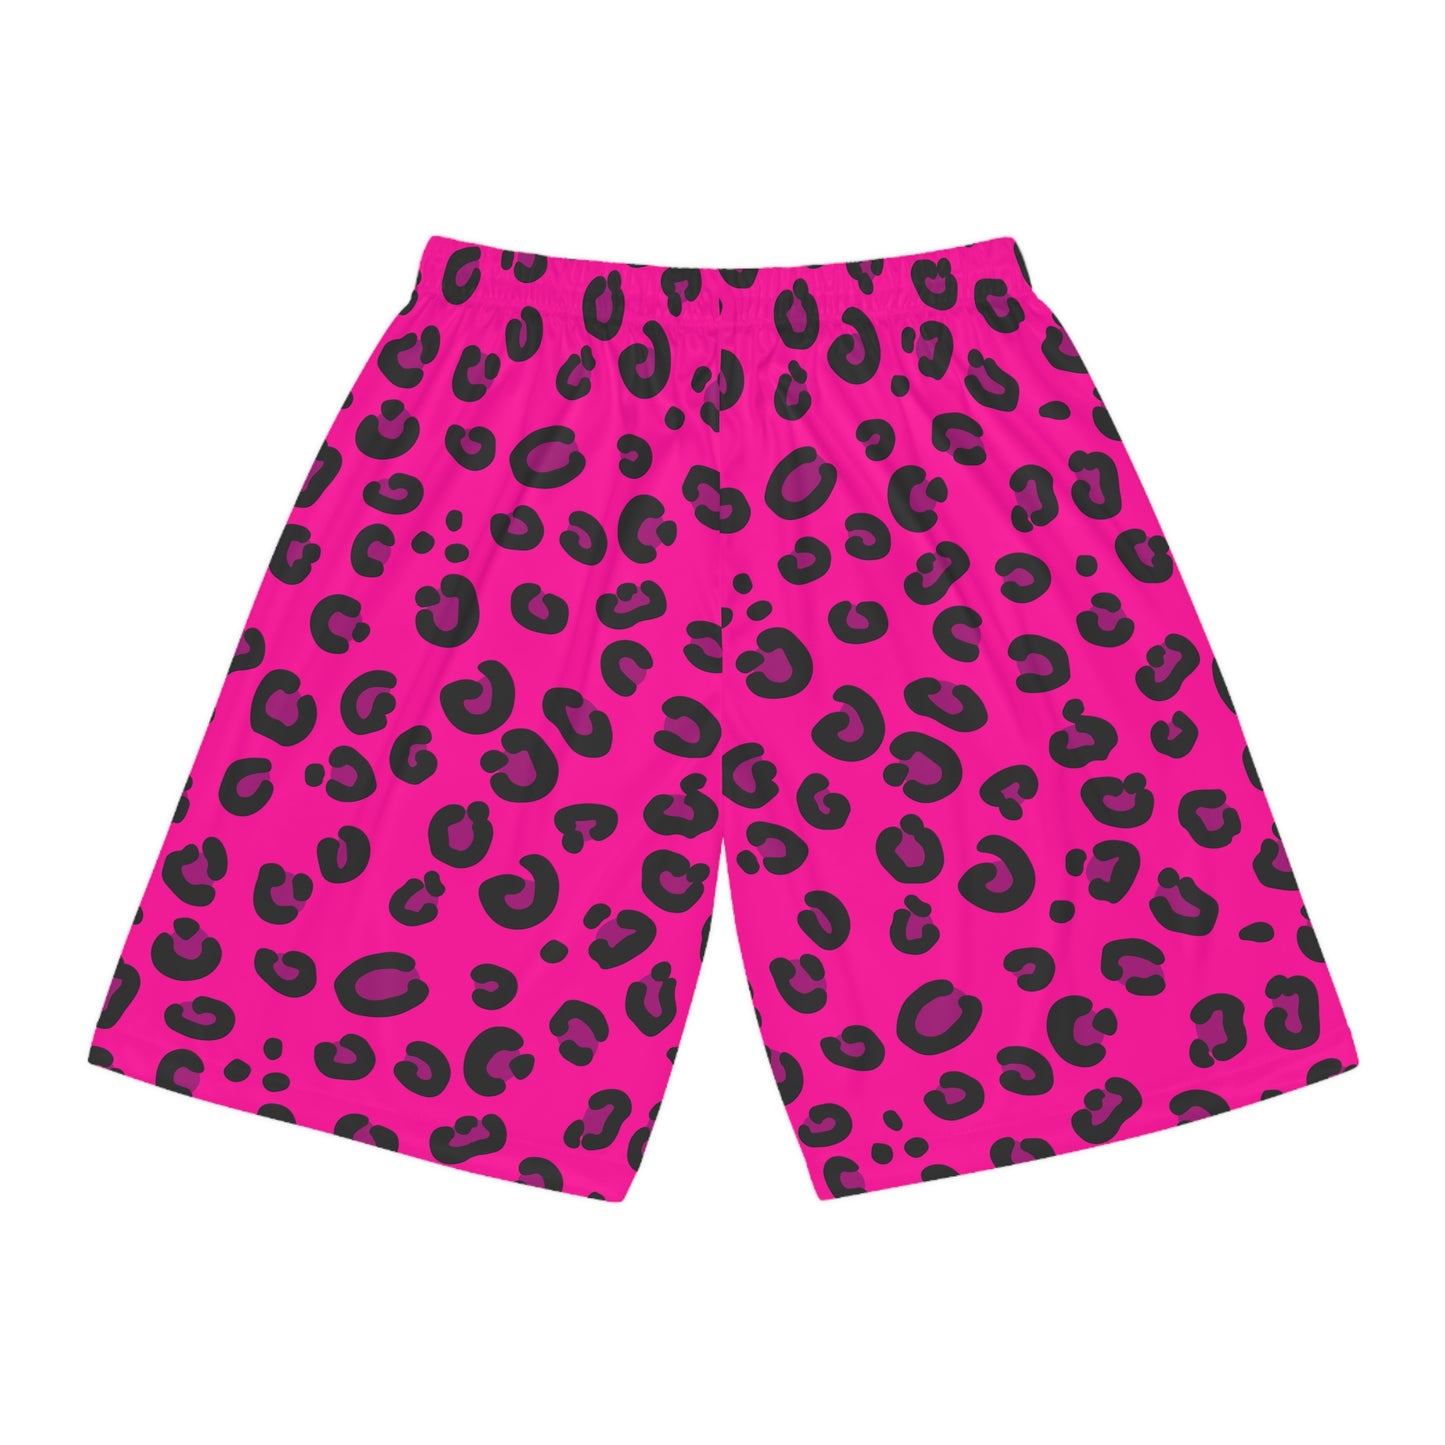 Gutter Cat Gang Pink Leopard Basketball Shorts